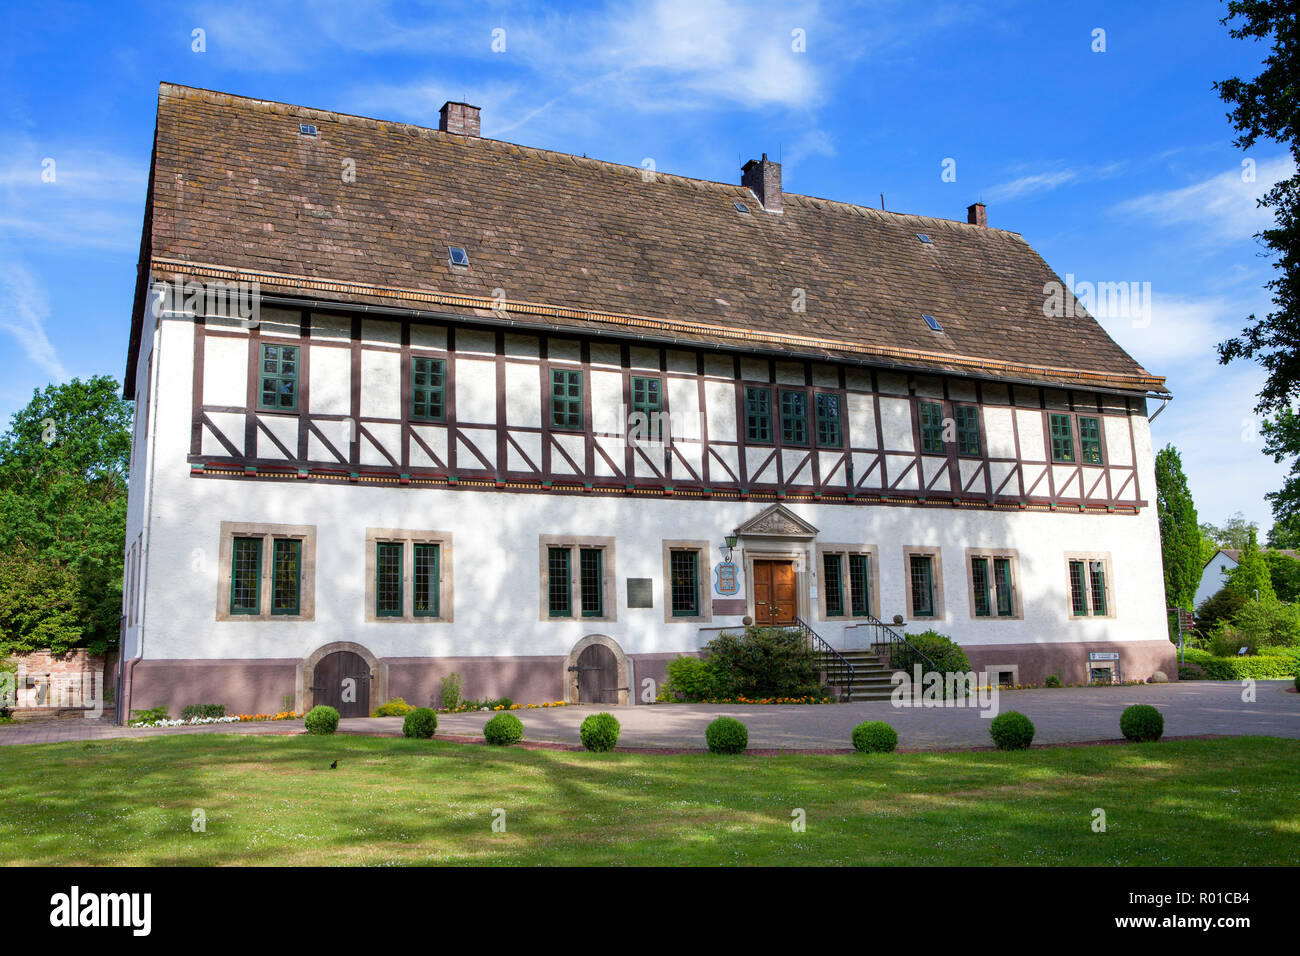 Hôtel de ville, lieu de naissance et la résidence du Baron Muenchhausen, Bodenwerder, Weserbergland, Basse-Saxe, Allemagne, Europe Banque D'Images